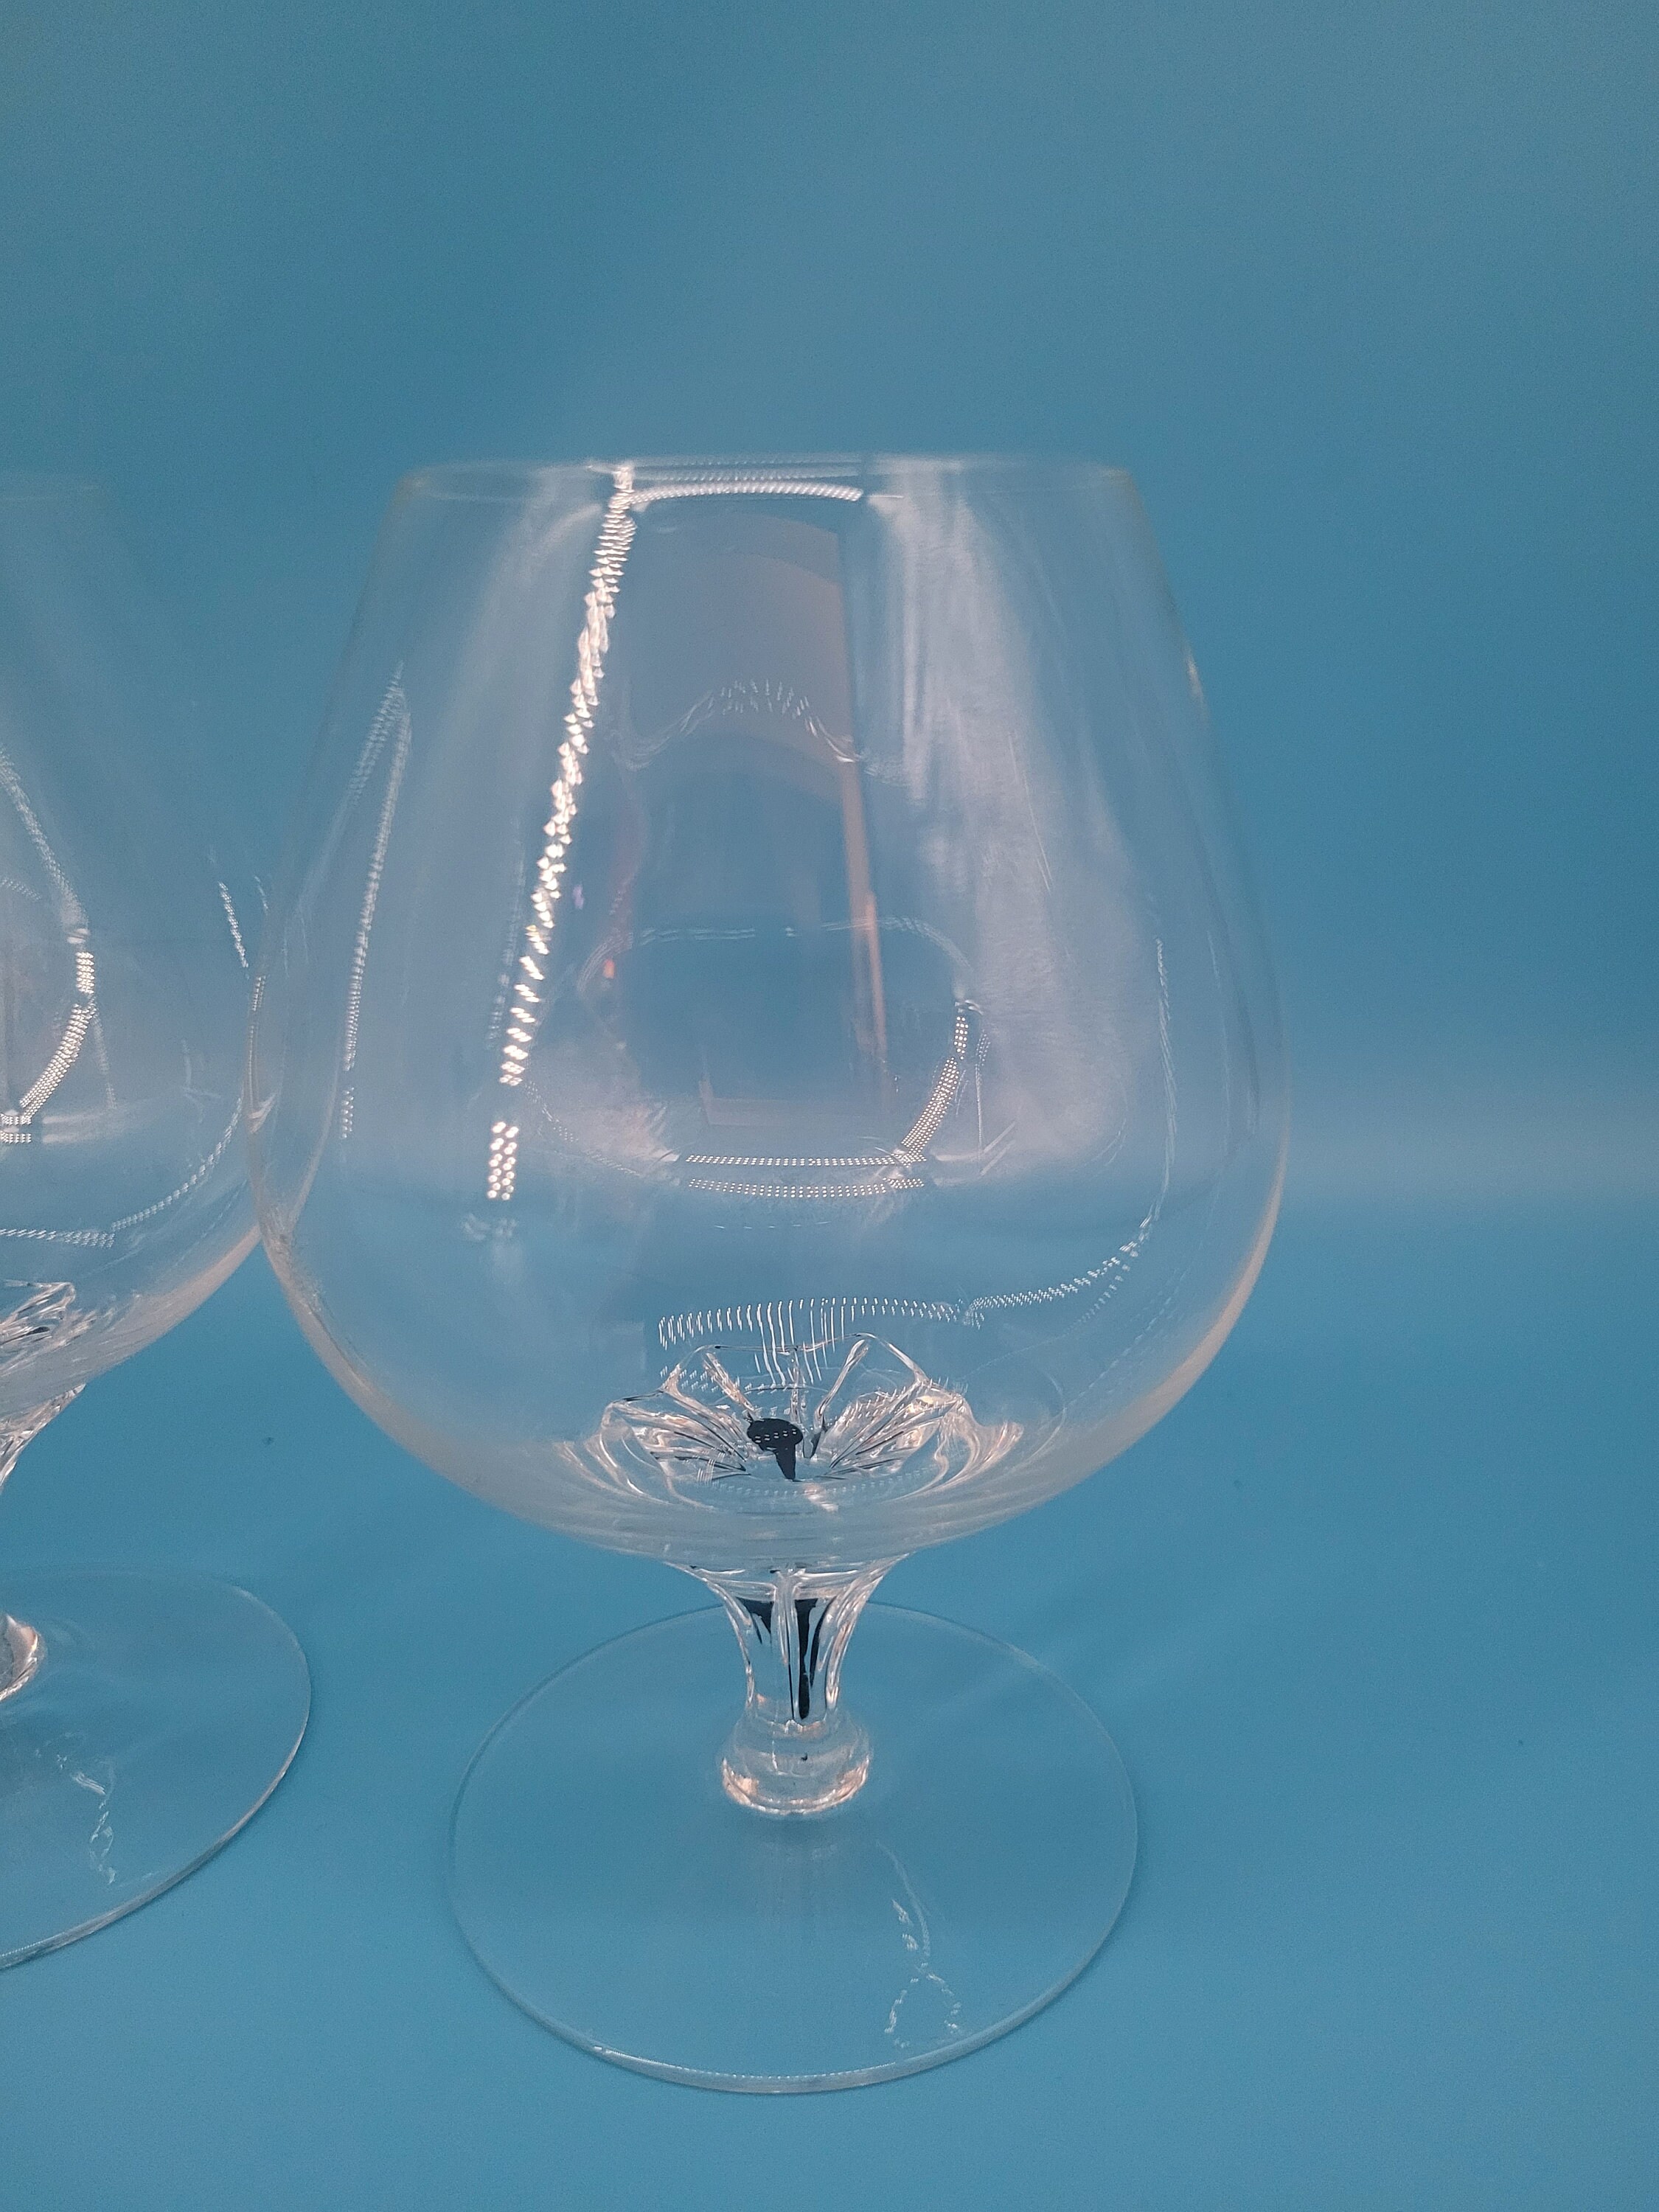 Dorset Snifter Glasses, Brandy Glasses